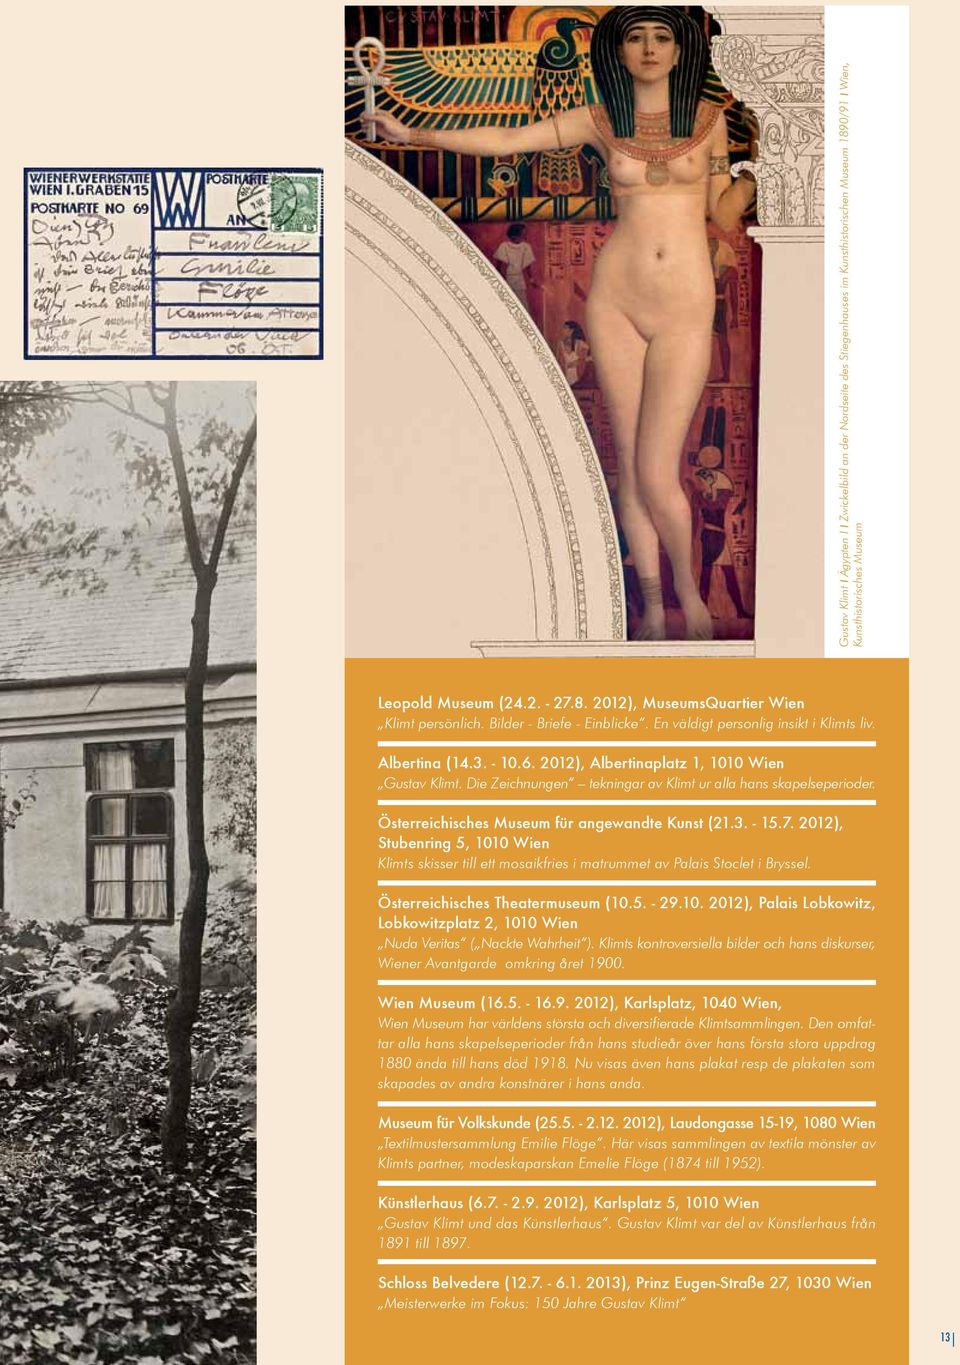 Die Zeichnungen tekningar av Klimt ur alla hans skapelseperioder. Österreichisches Museum für angewandte Kunst (21.3. - 15.7.